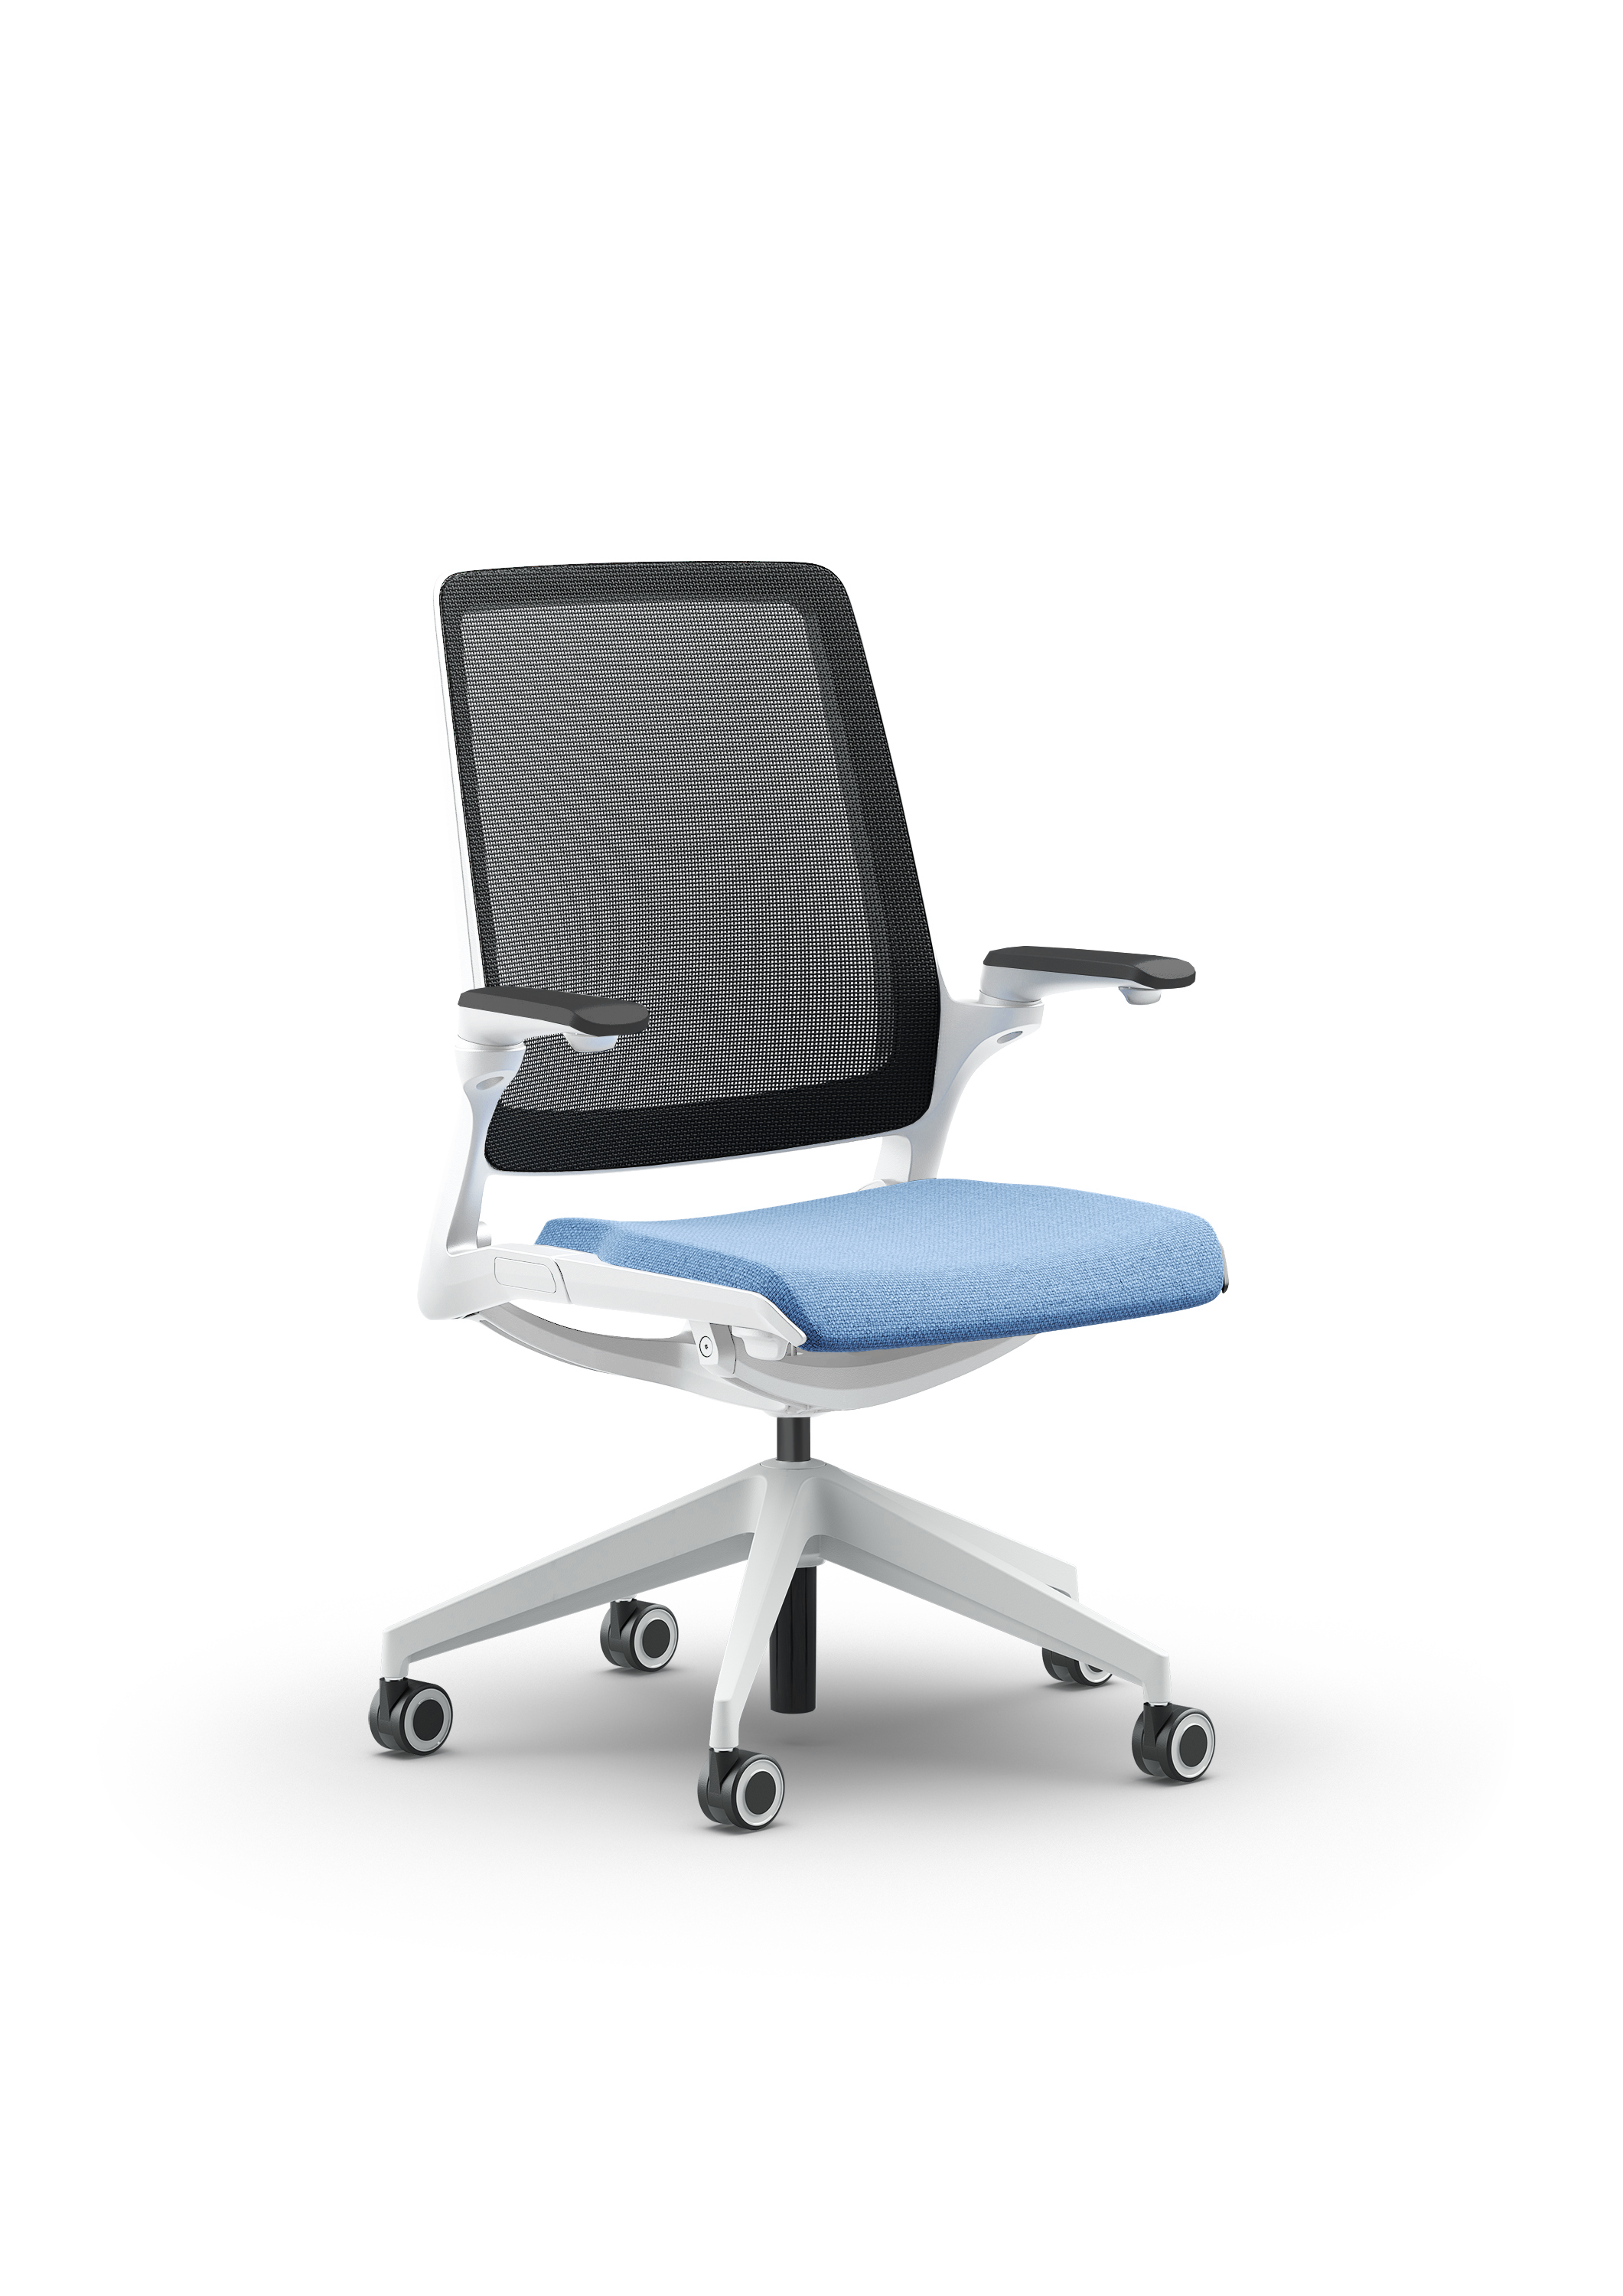 Biały fotel biurowy z niebieskim siedzeniem Ob smart - widoczny po skosie od przodu zdjęcie 16